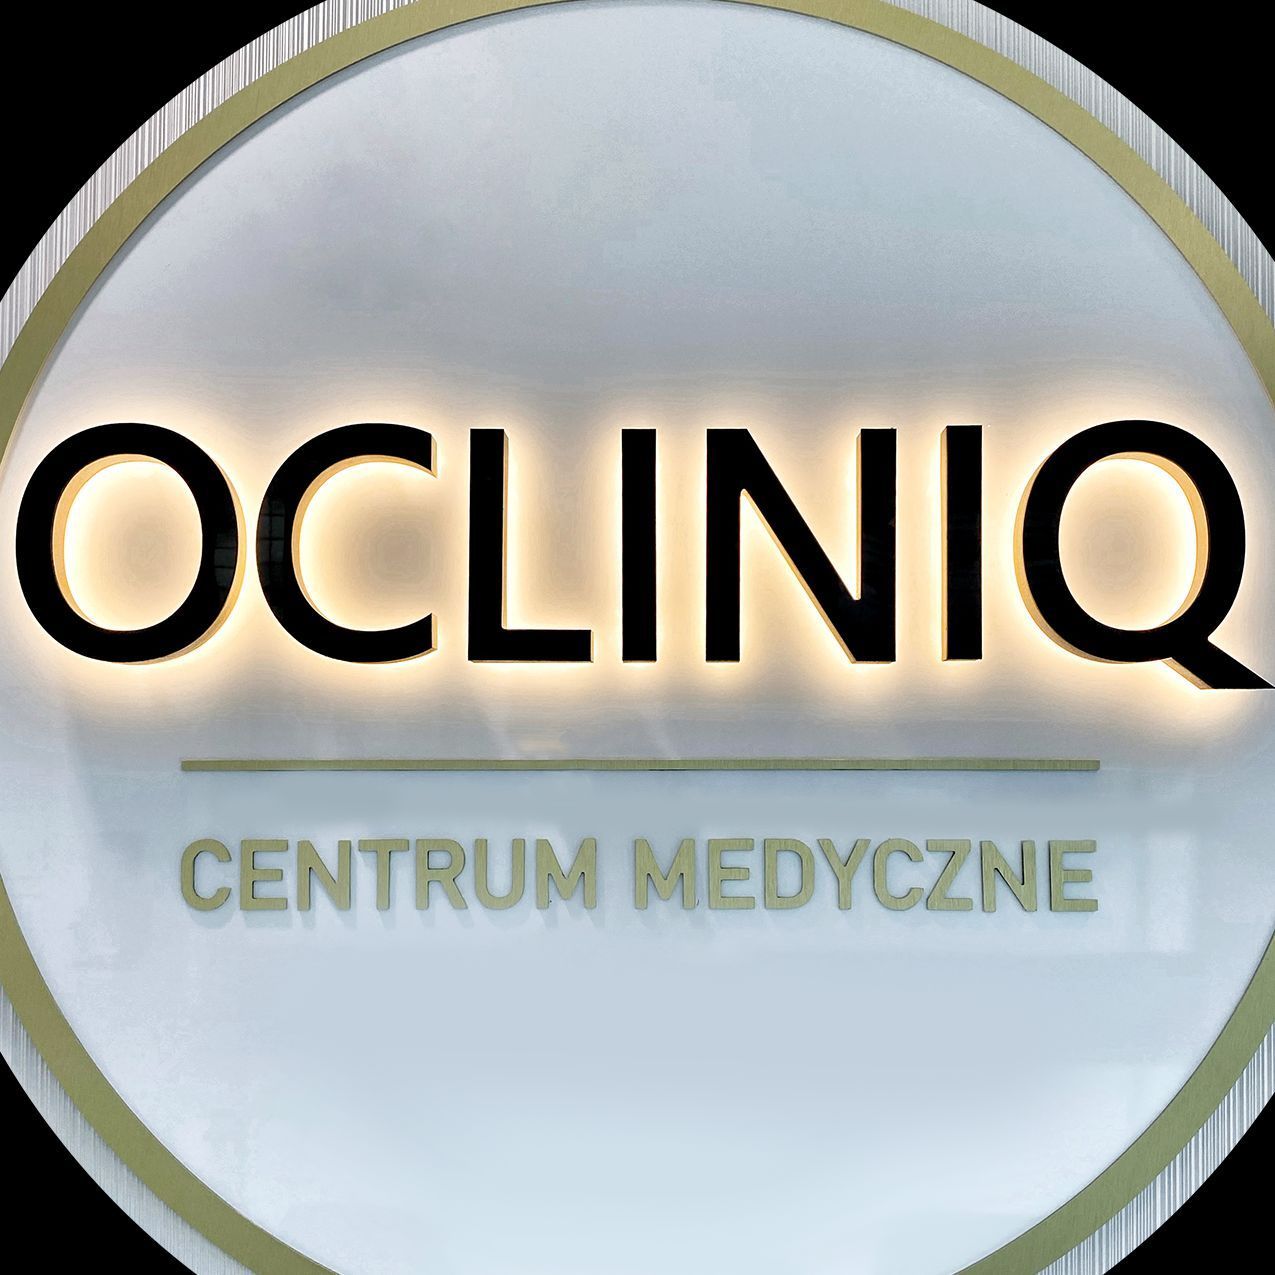 OCLINIQ Centrum Medyczne, Optyków 3B, U02 (wejście od strony parkingu Atrium Promenada), 04-175, Warszawa, Praga-Południe